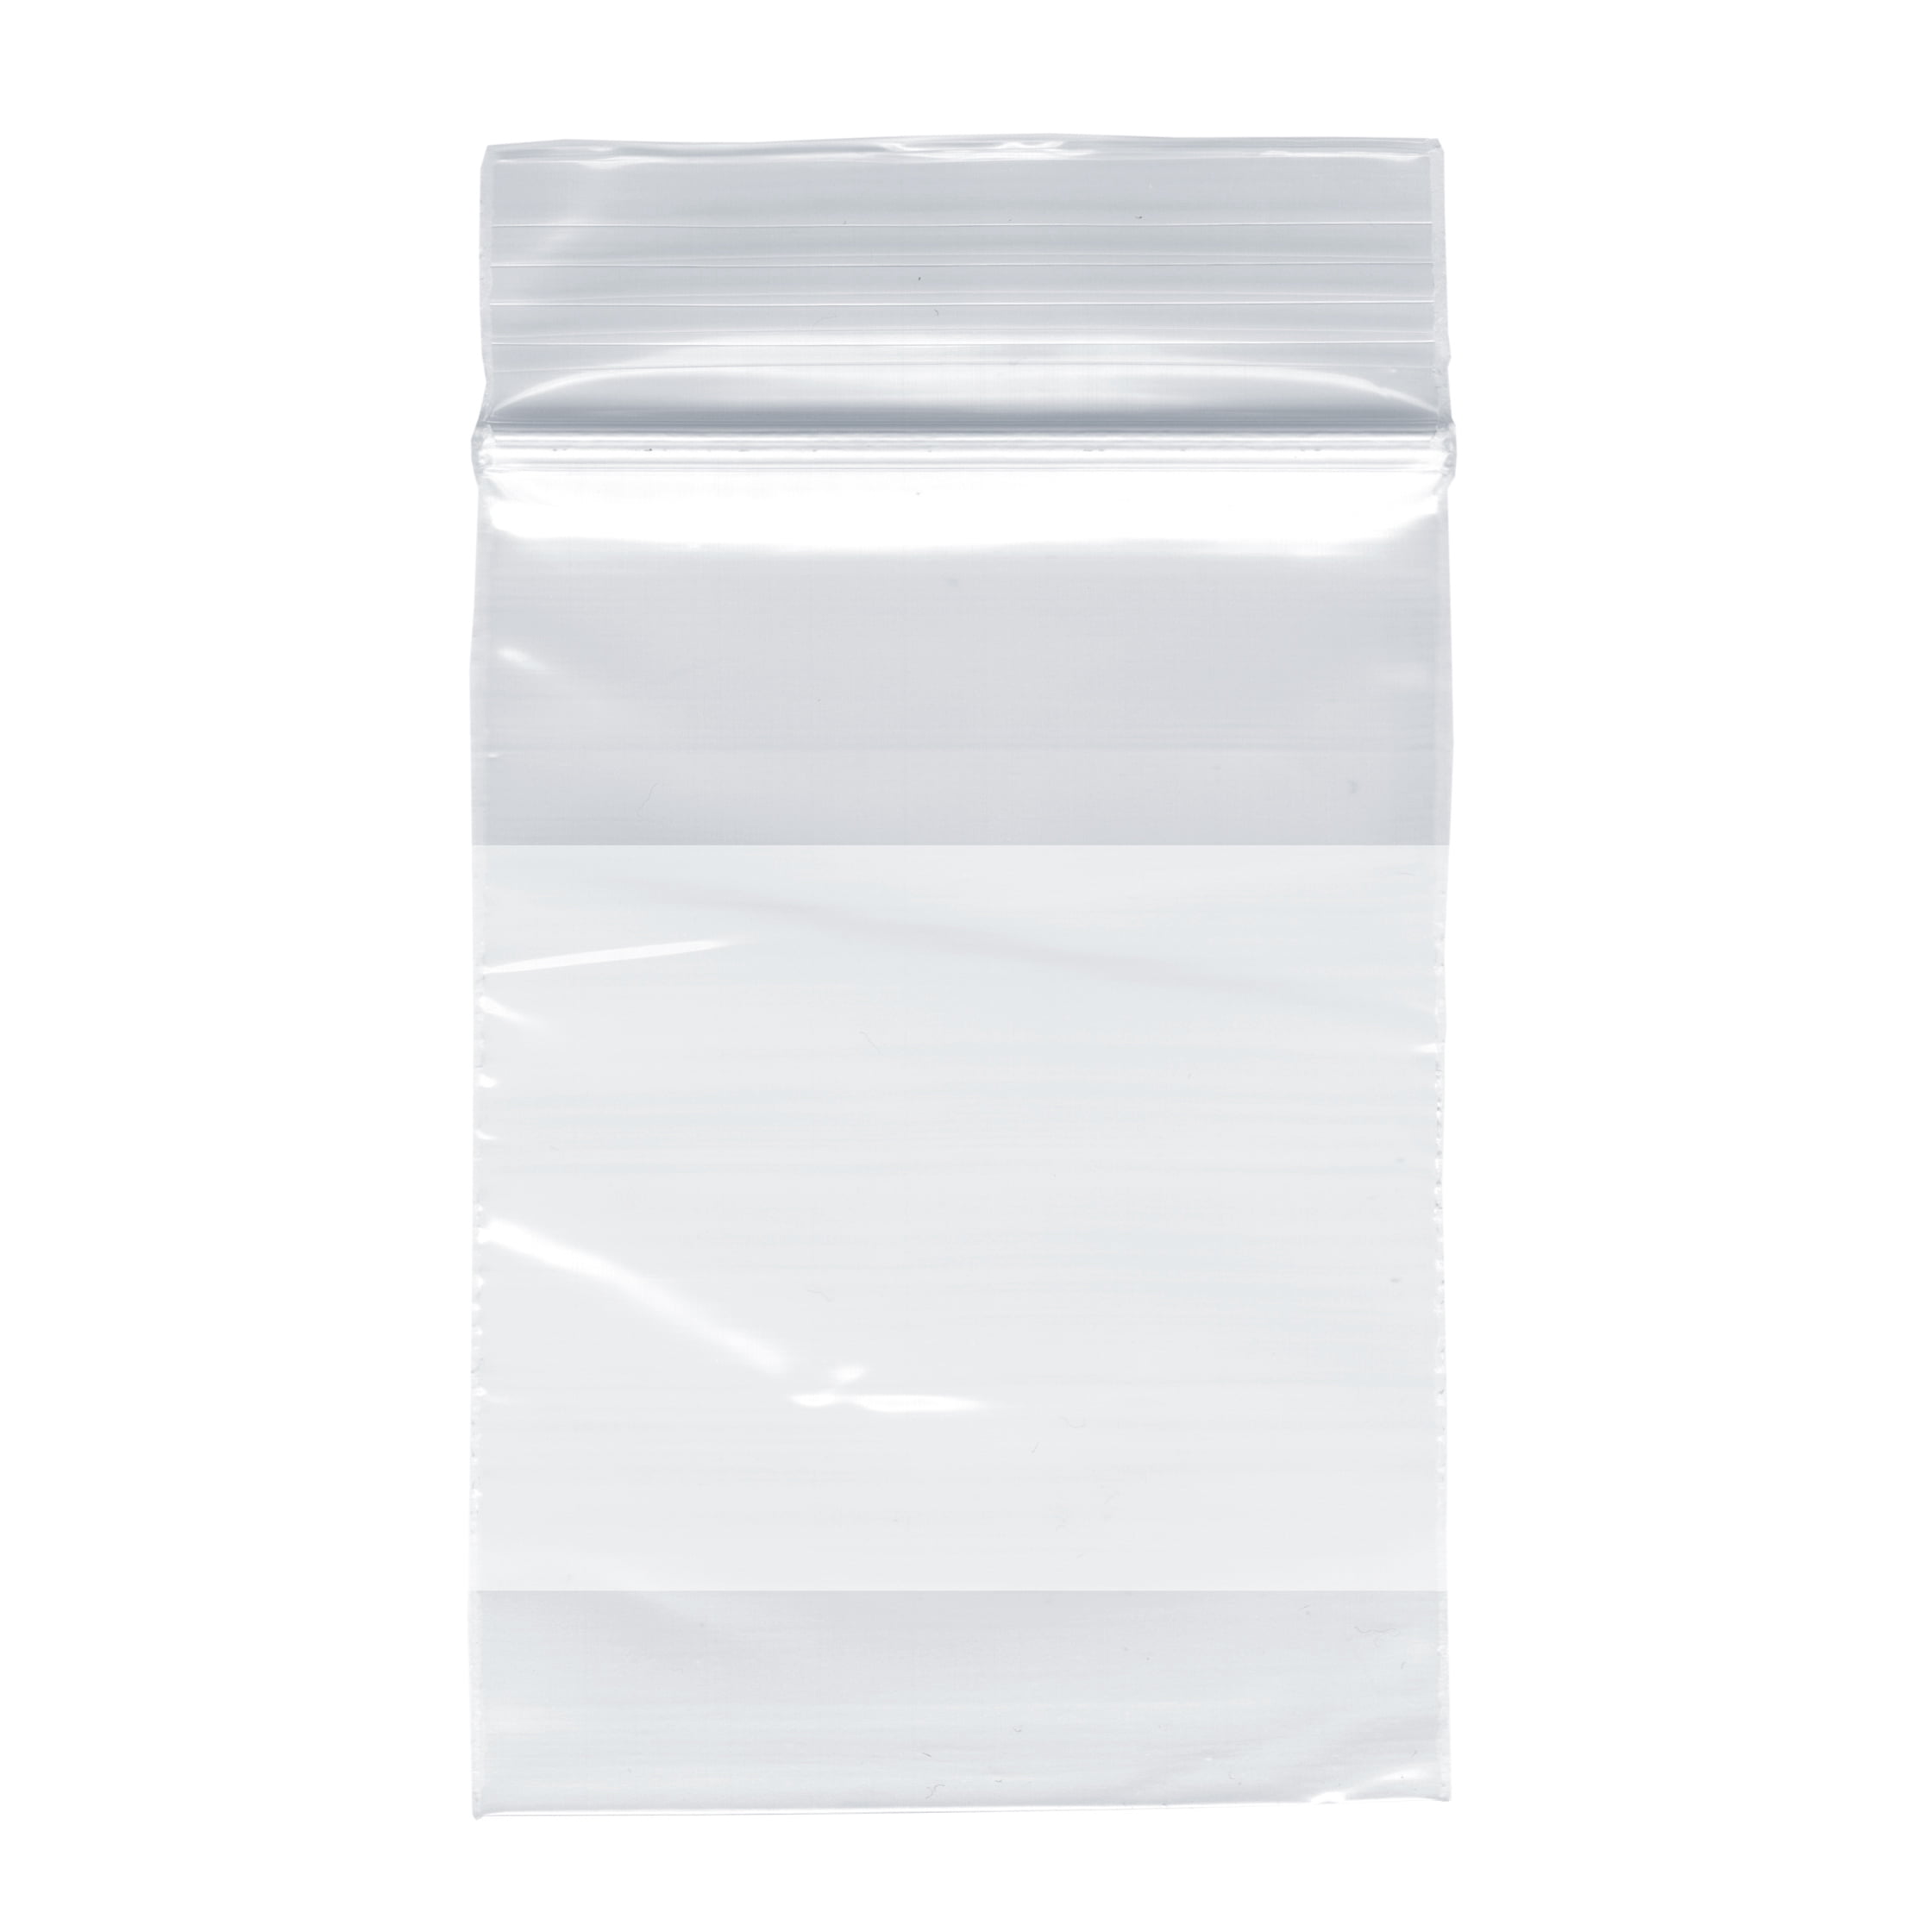 2" X 3" Zip Lock Clear Plastic Bag Small 100pcs! EN201 